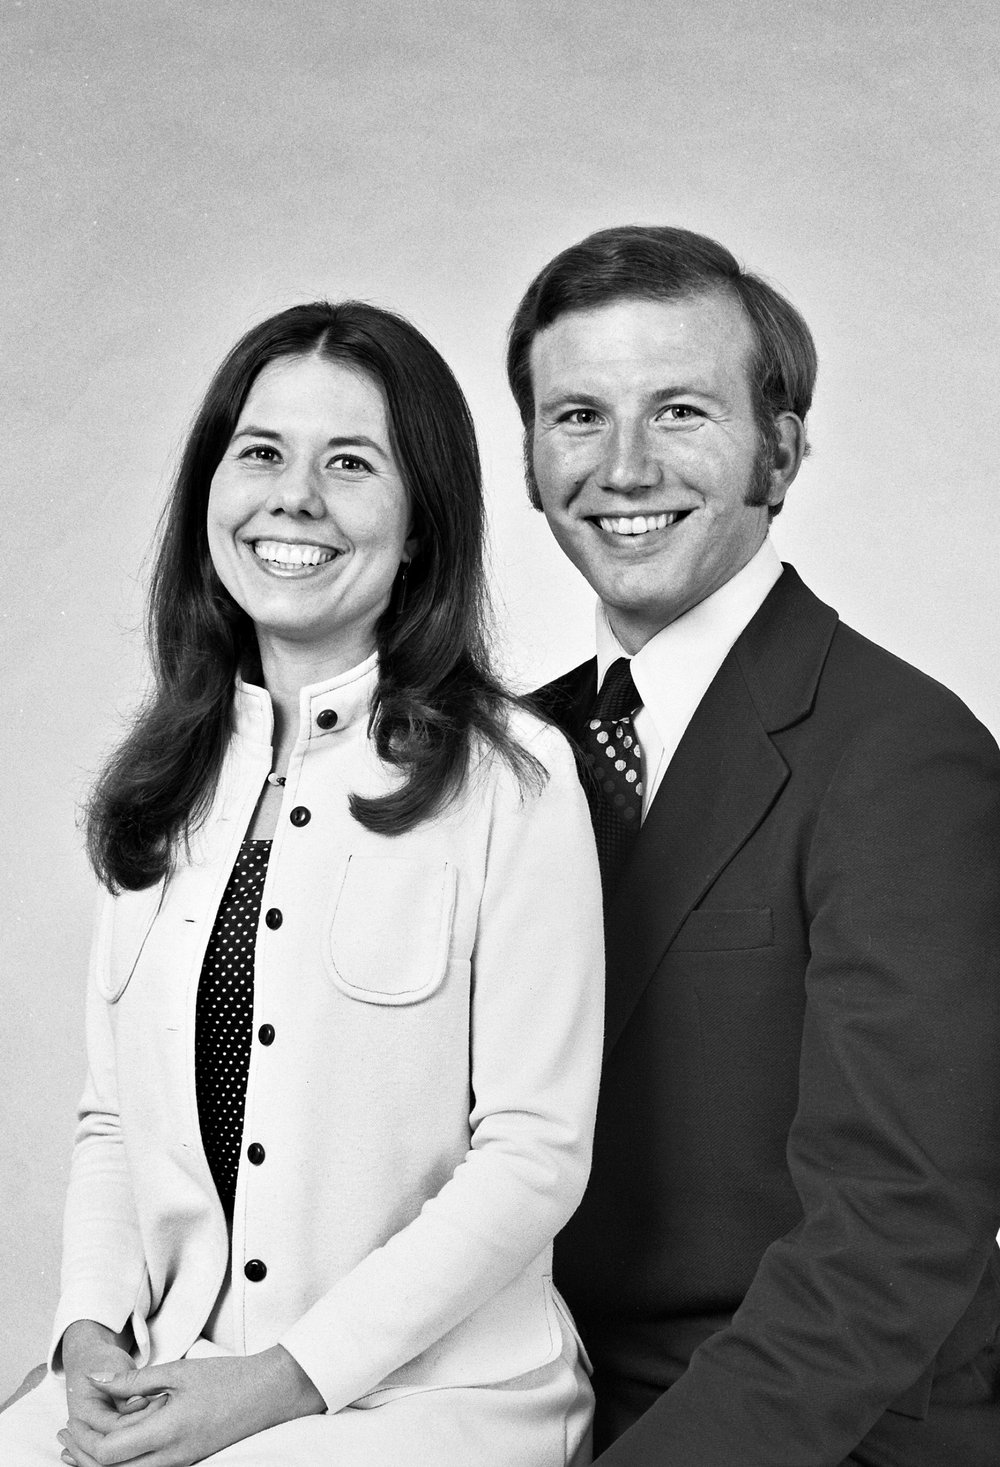 1975 - Judy & Steve Douglass Engagement Photo - 1975   (#2).jpg